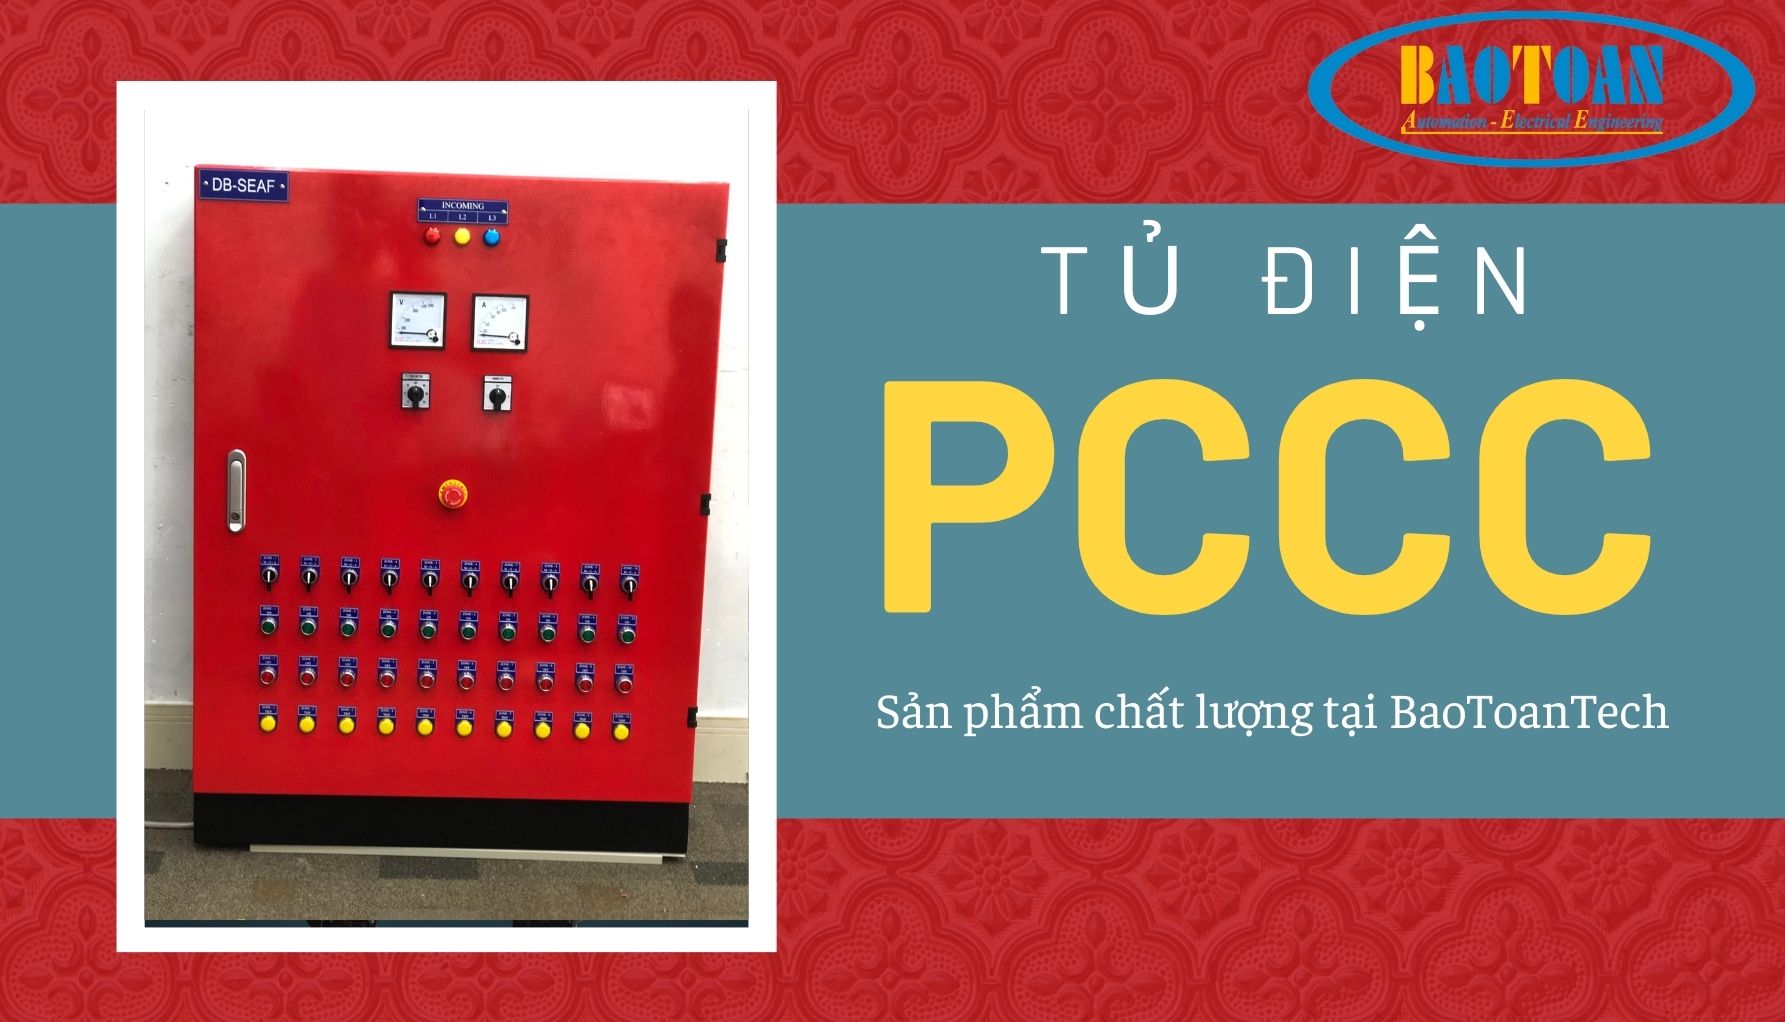 Tủ điện PCCC tại BaoToanTech